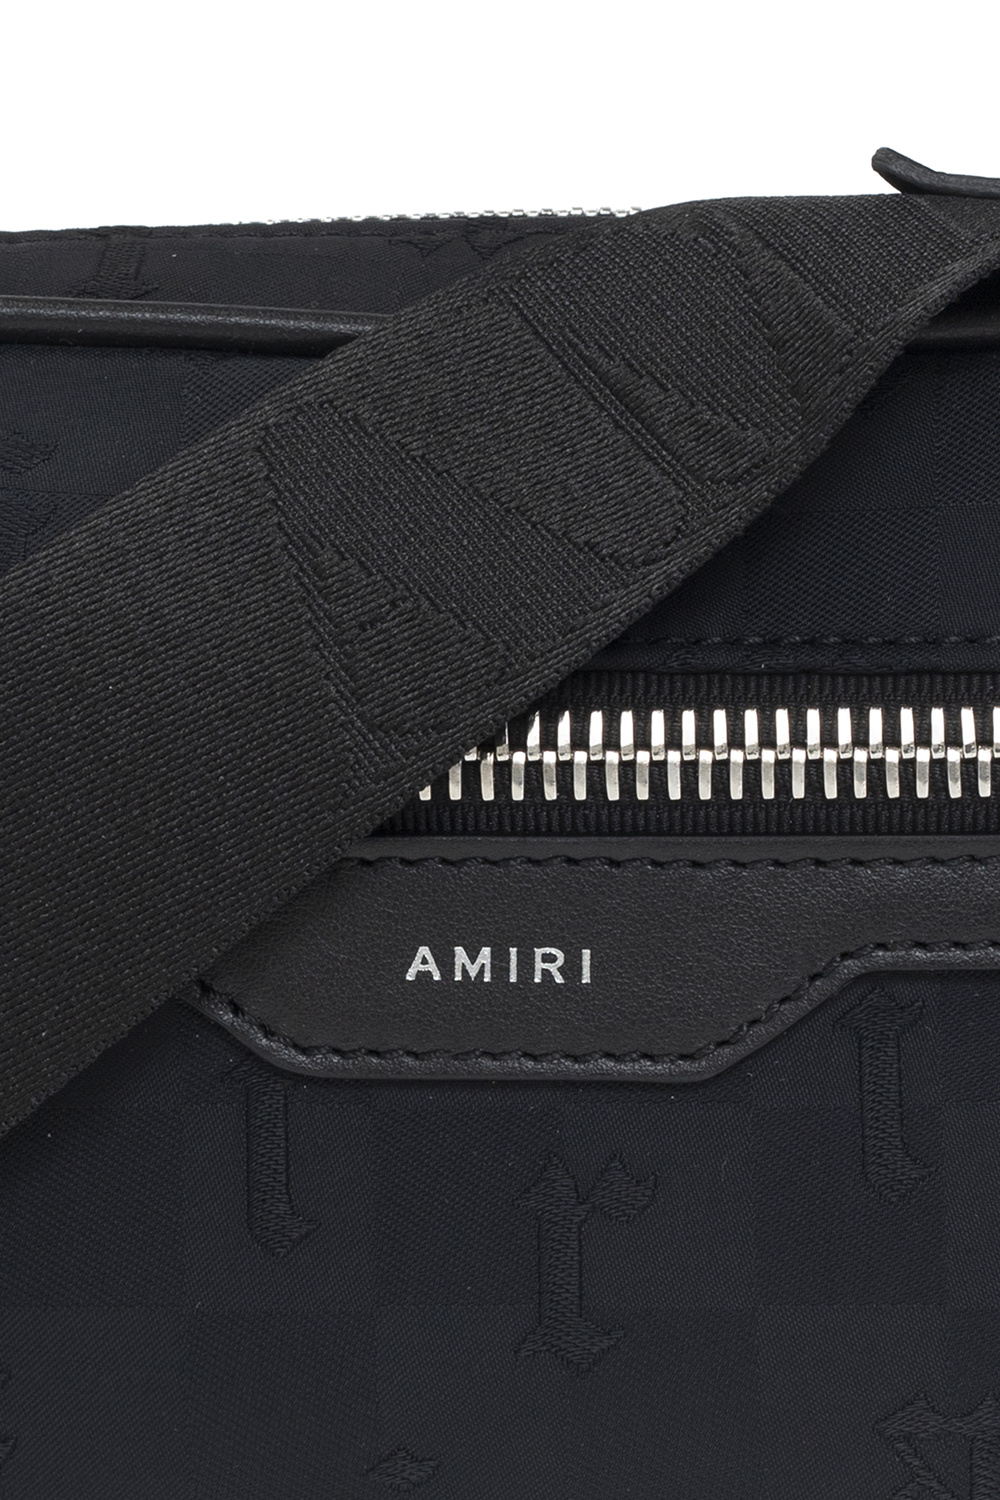 Amiri Jil Sander stud-embellished belt bag